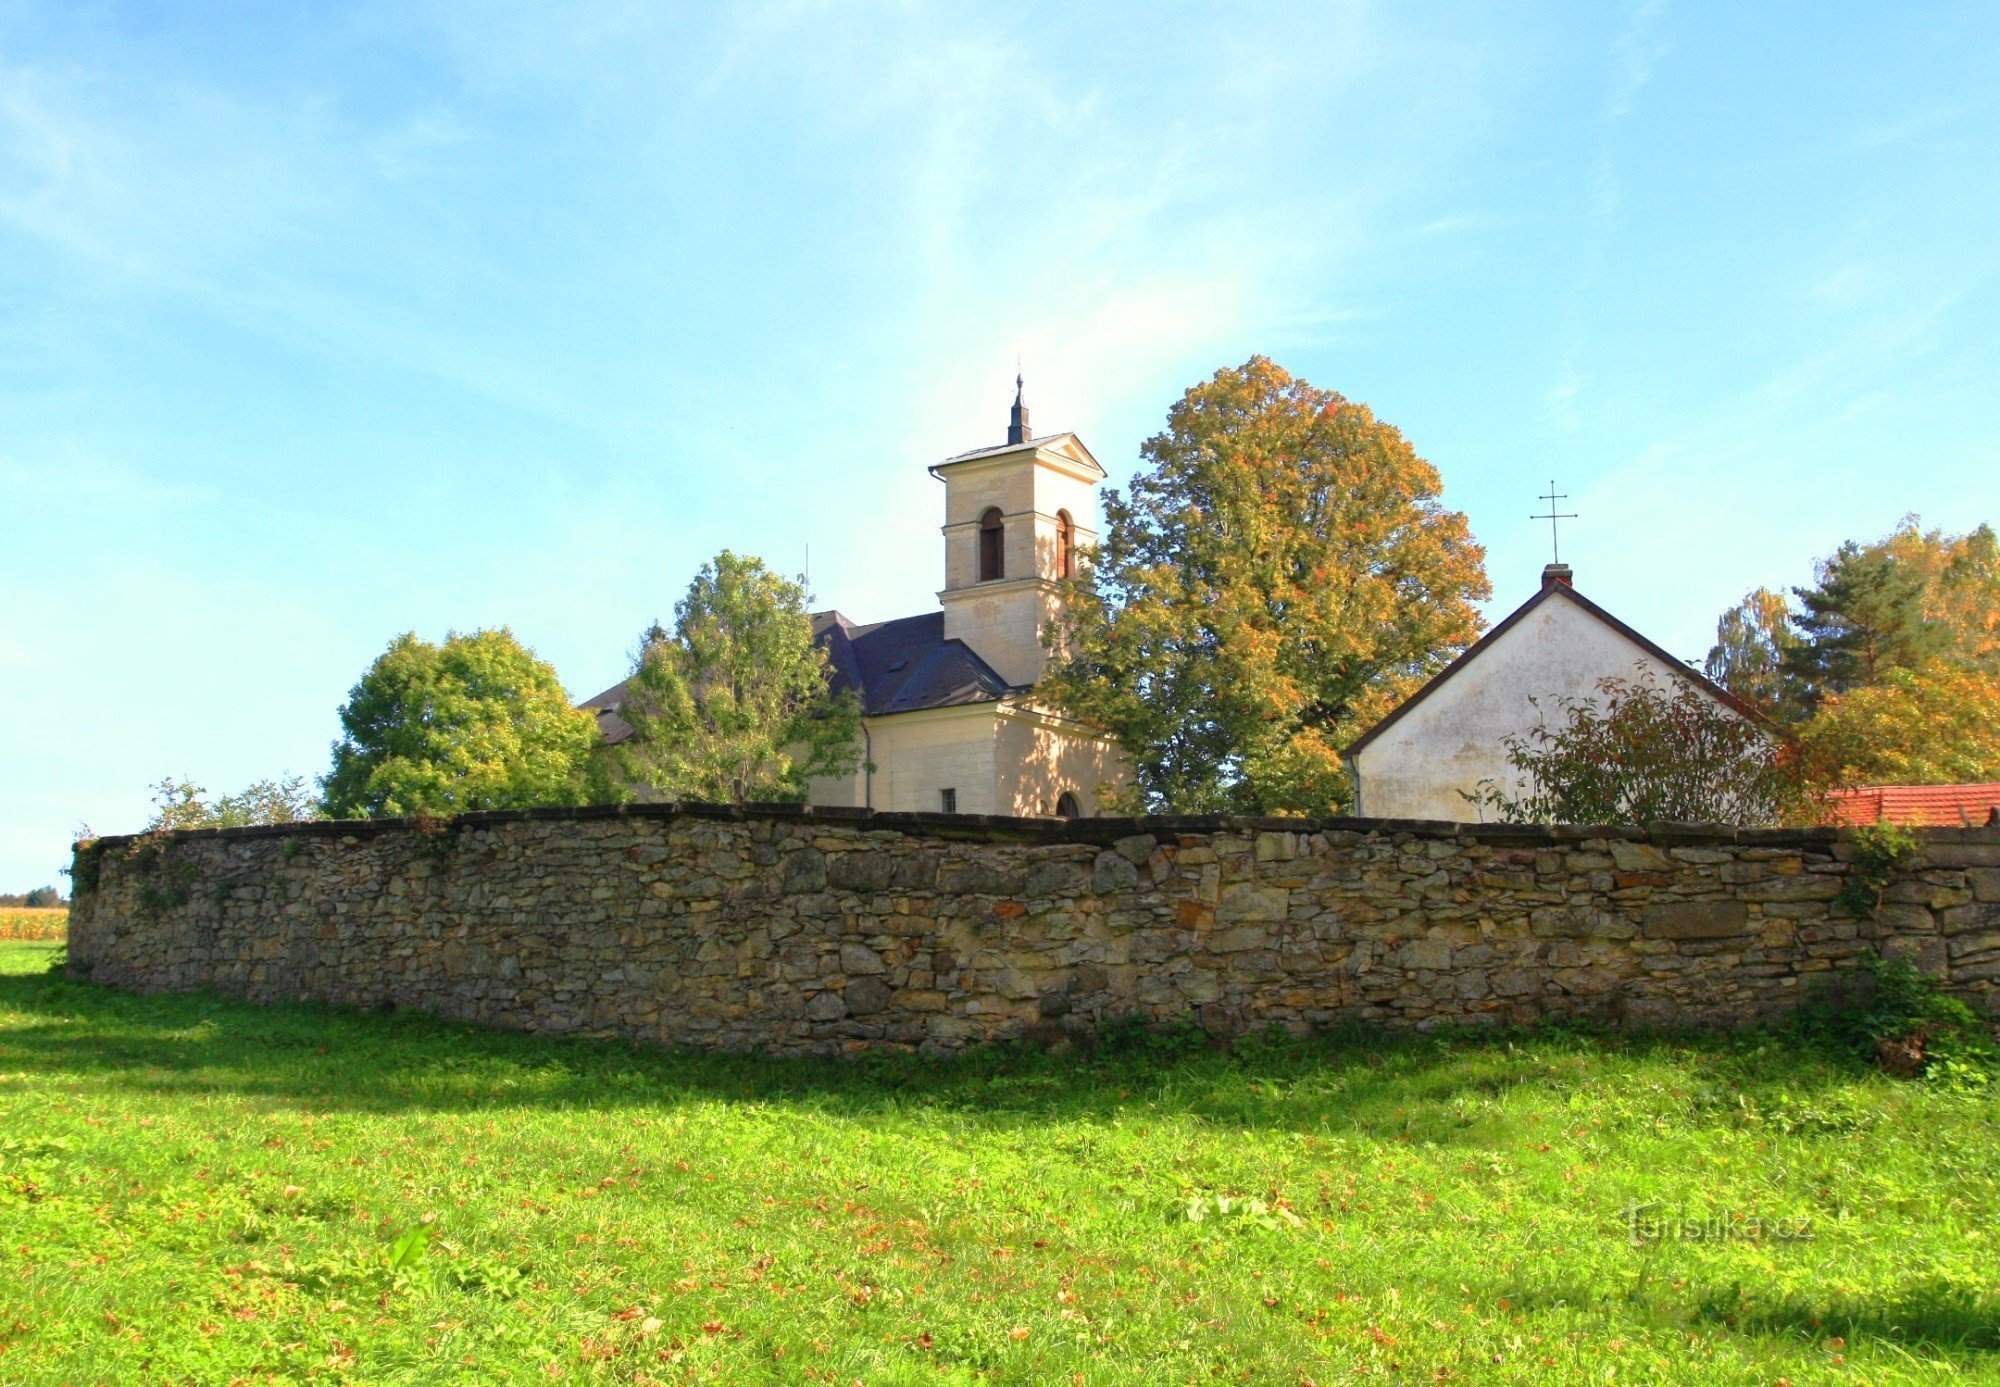 Templom kápolnával és temetővel